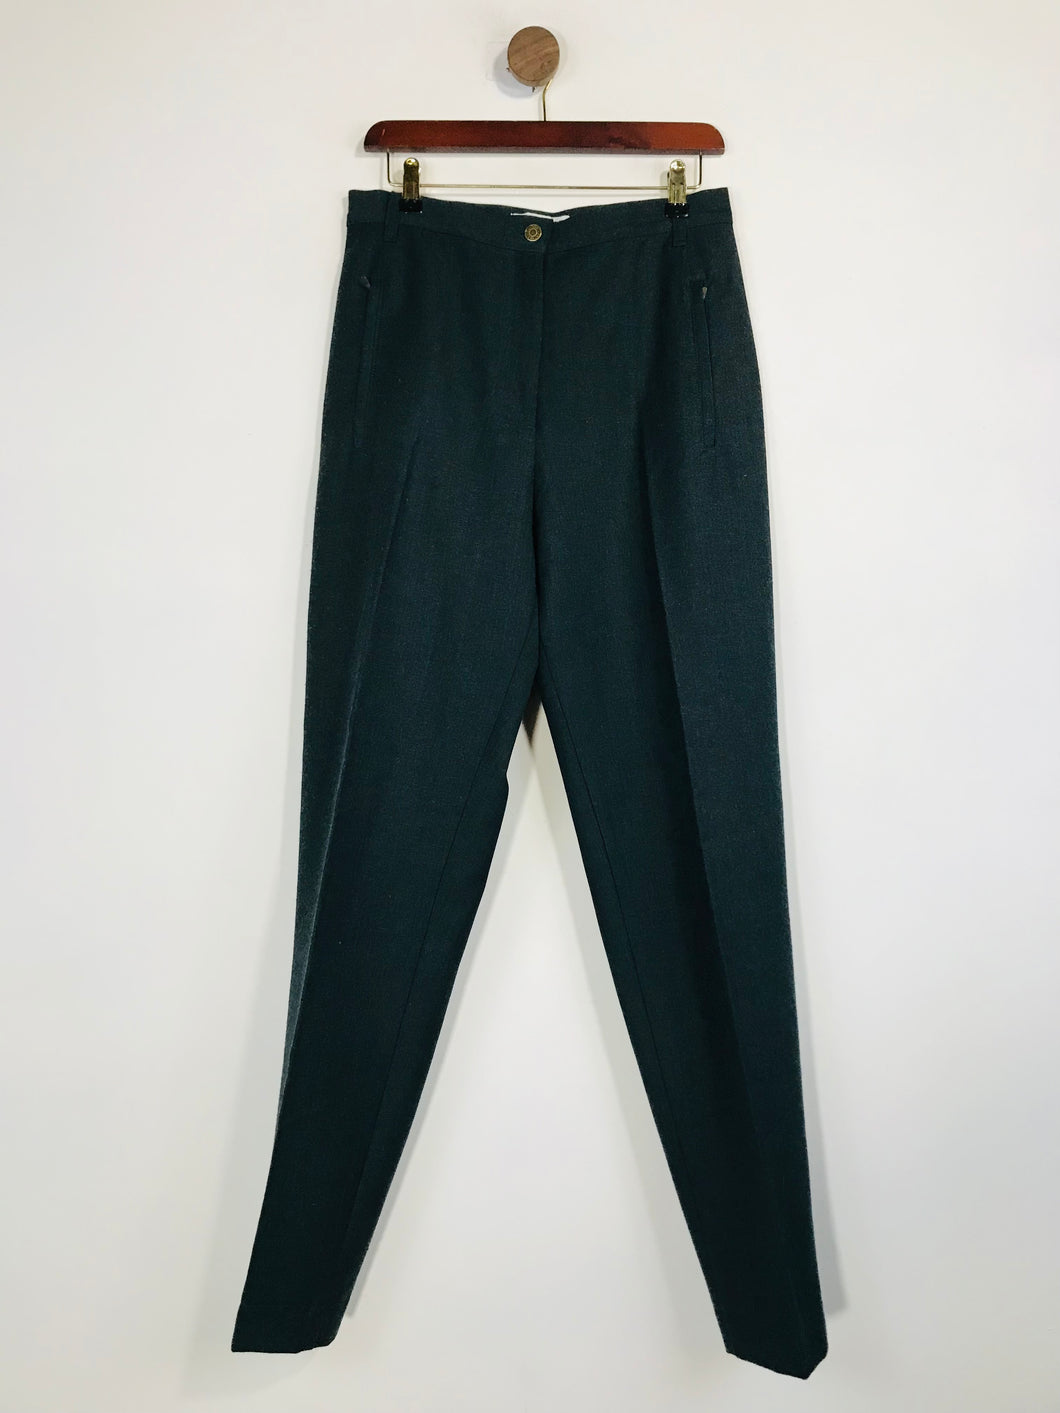 Jaeger Women's Wool High Waist Smart Trousers | UK14 | Green